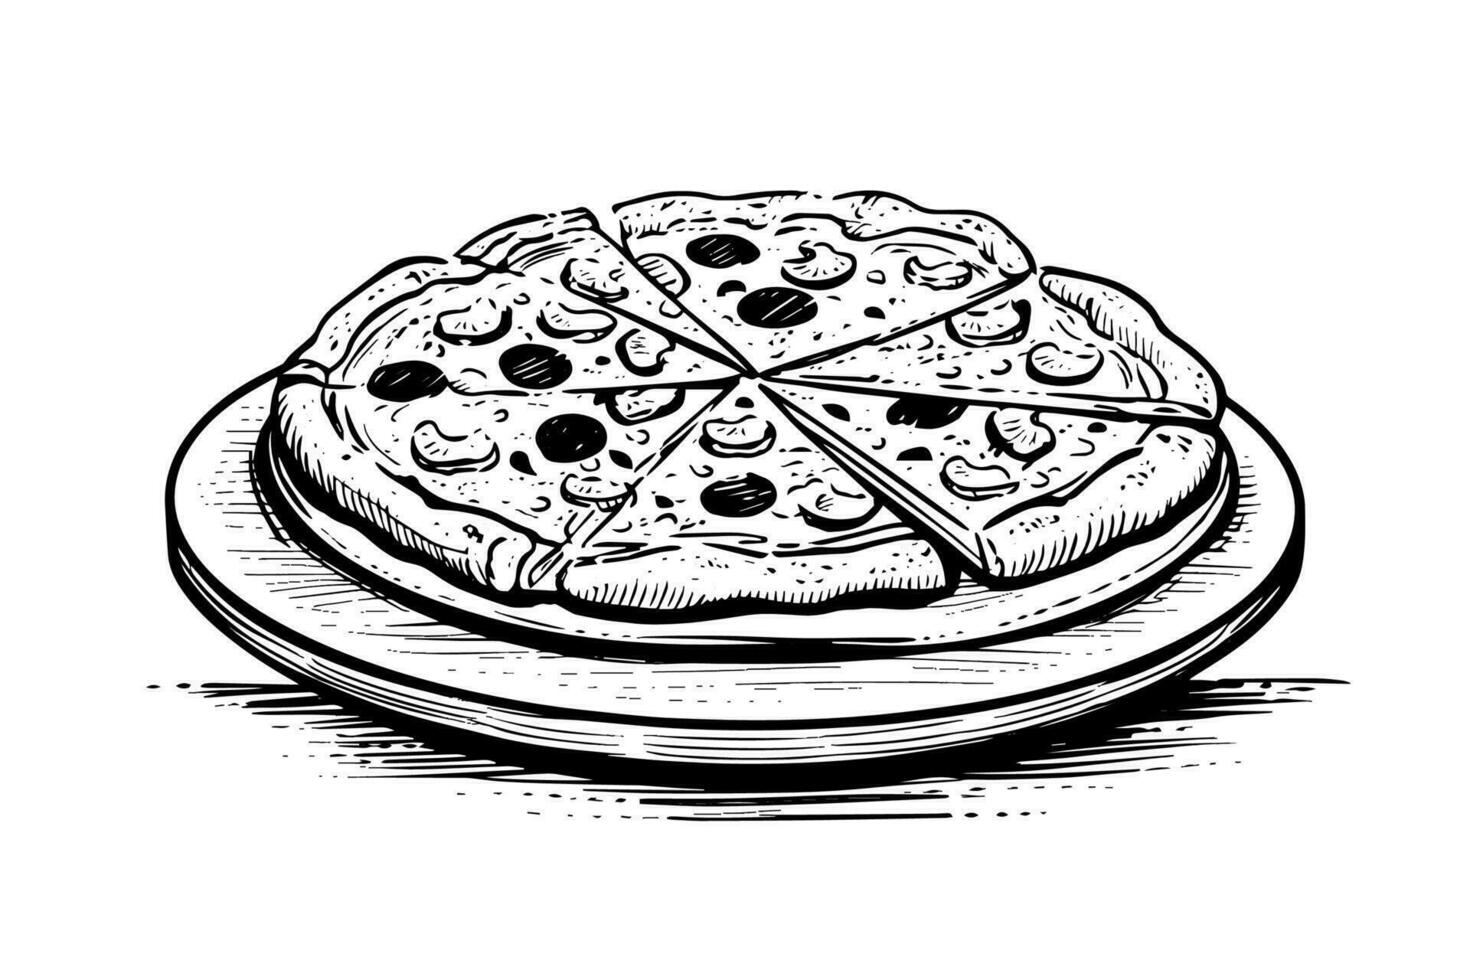 affettato Pizza schizzo mano disegnato incisione stile vettore illustrazione.